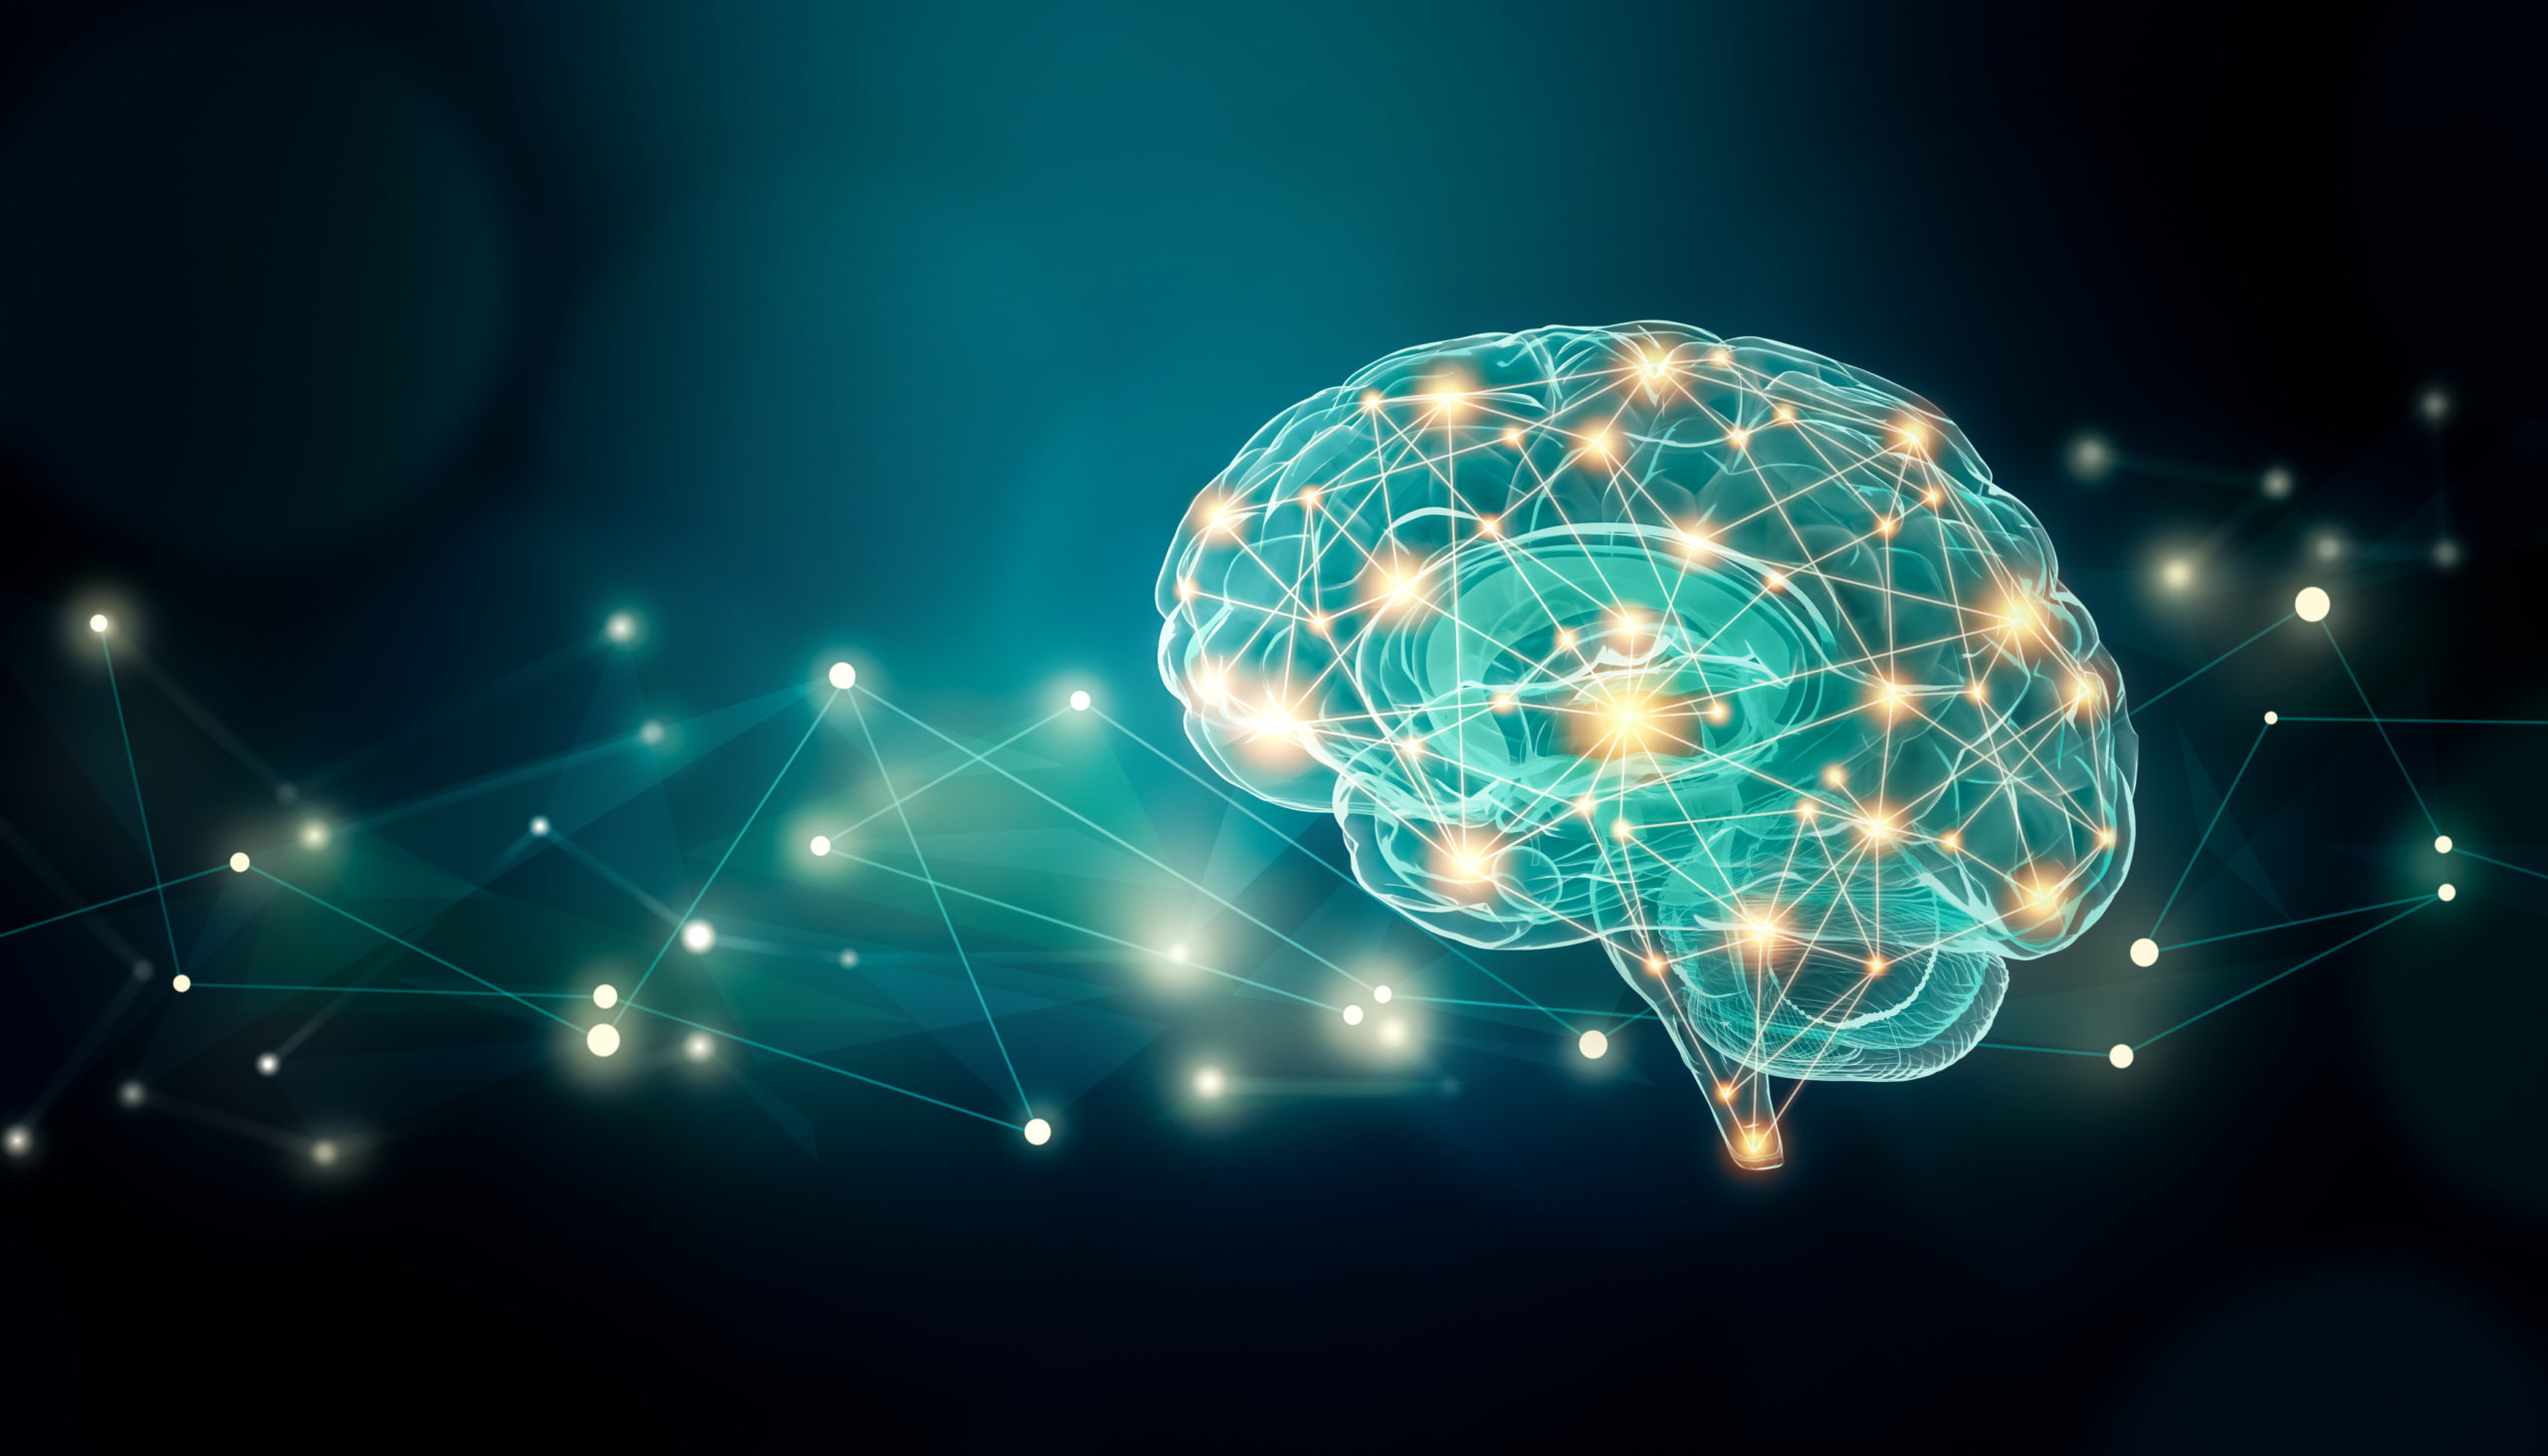 Psicoterapia EMDR cria conexões cerebrais